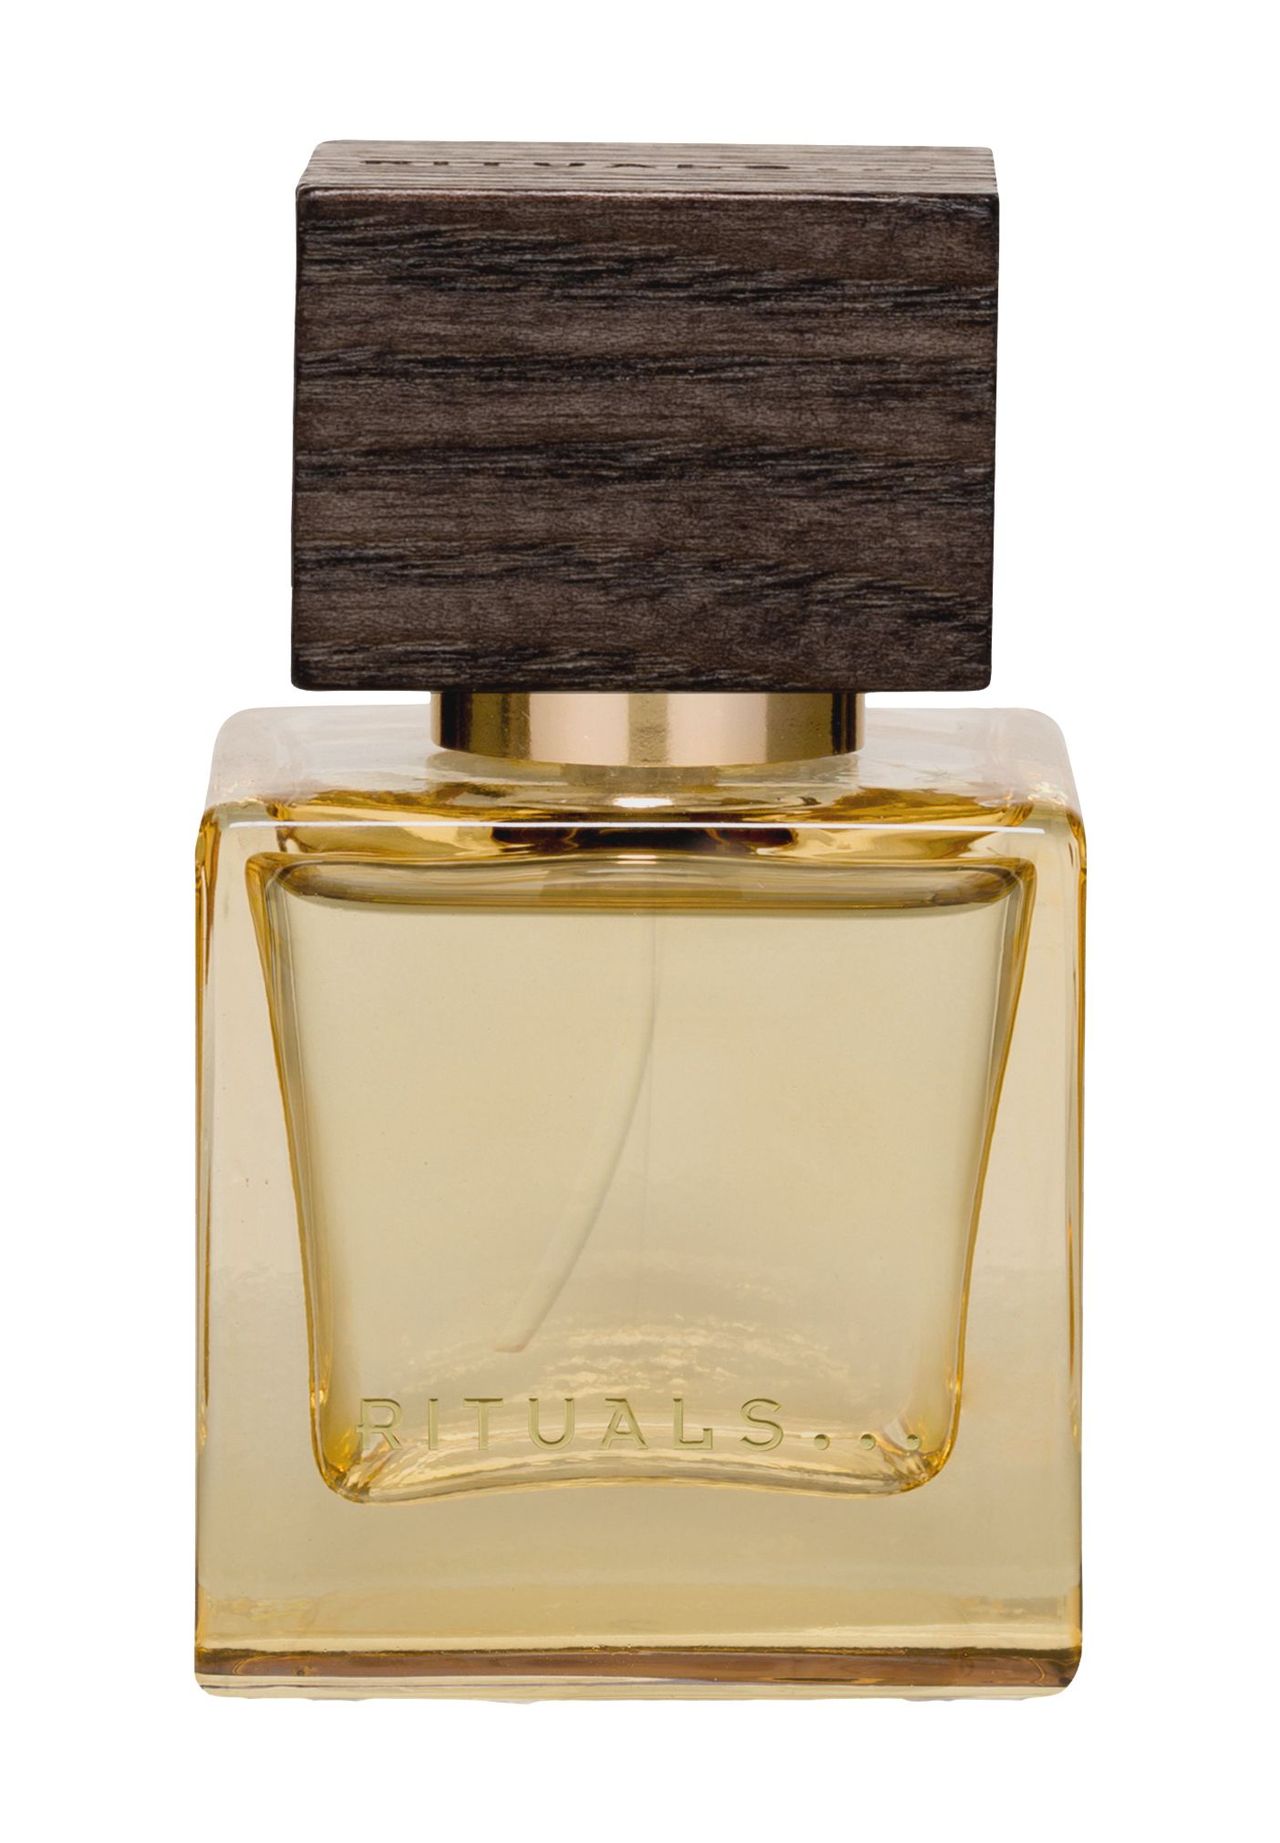 RITUALS® THE ICONIC COLLECTION Travel-L'Éclat, Eau de Parfum